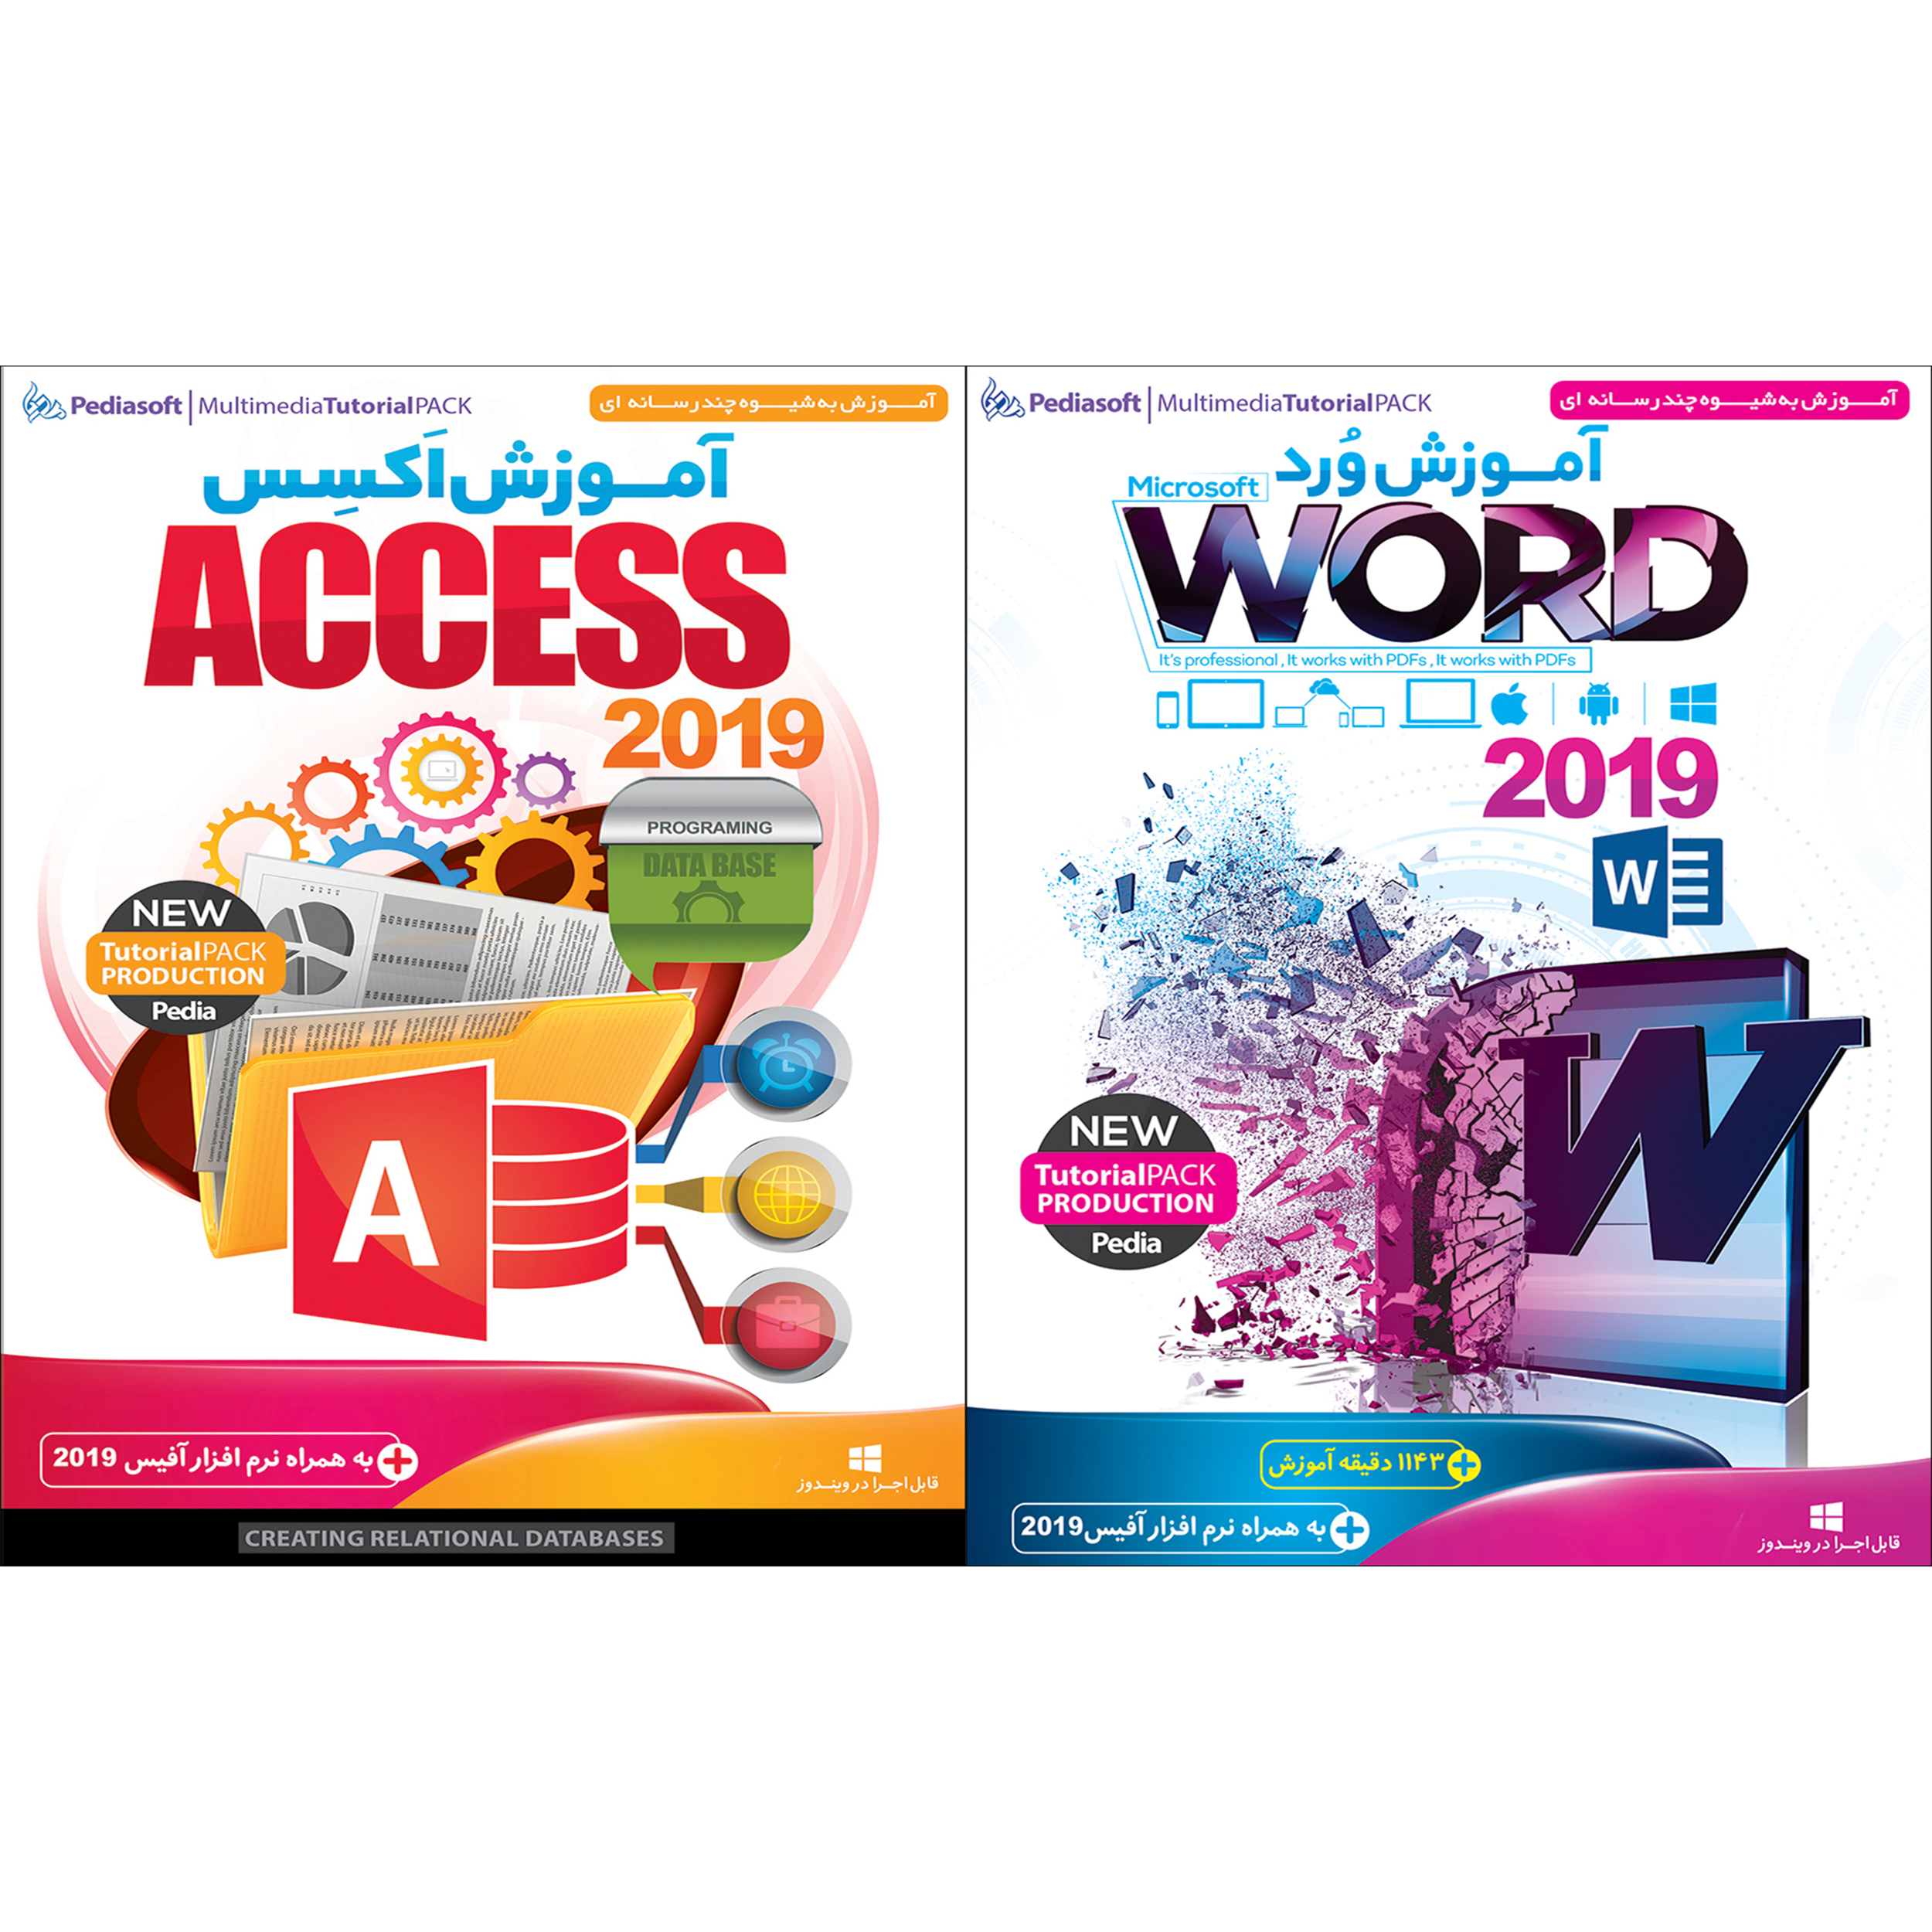 نرم افزار آموزش ورد Word 2019 نشر پدیا سافت به همراه نرم افزار آموزش اکسس Access 2019 نشر پدیا سافت